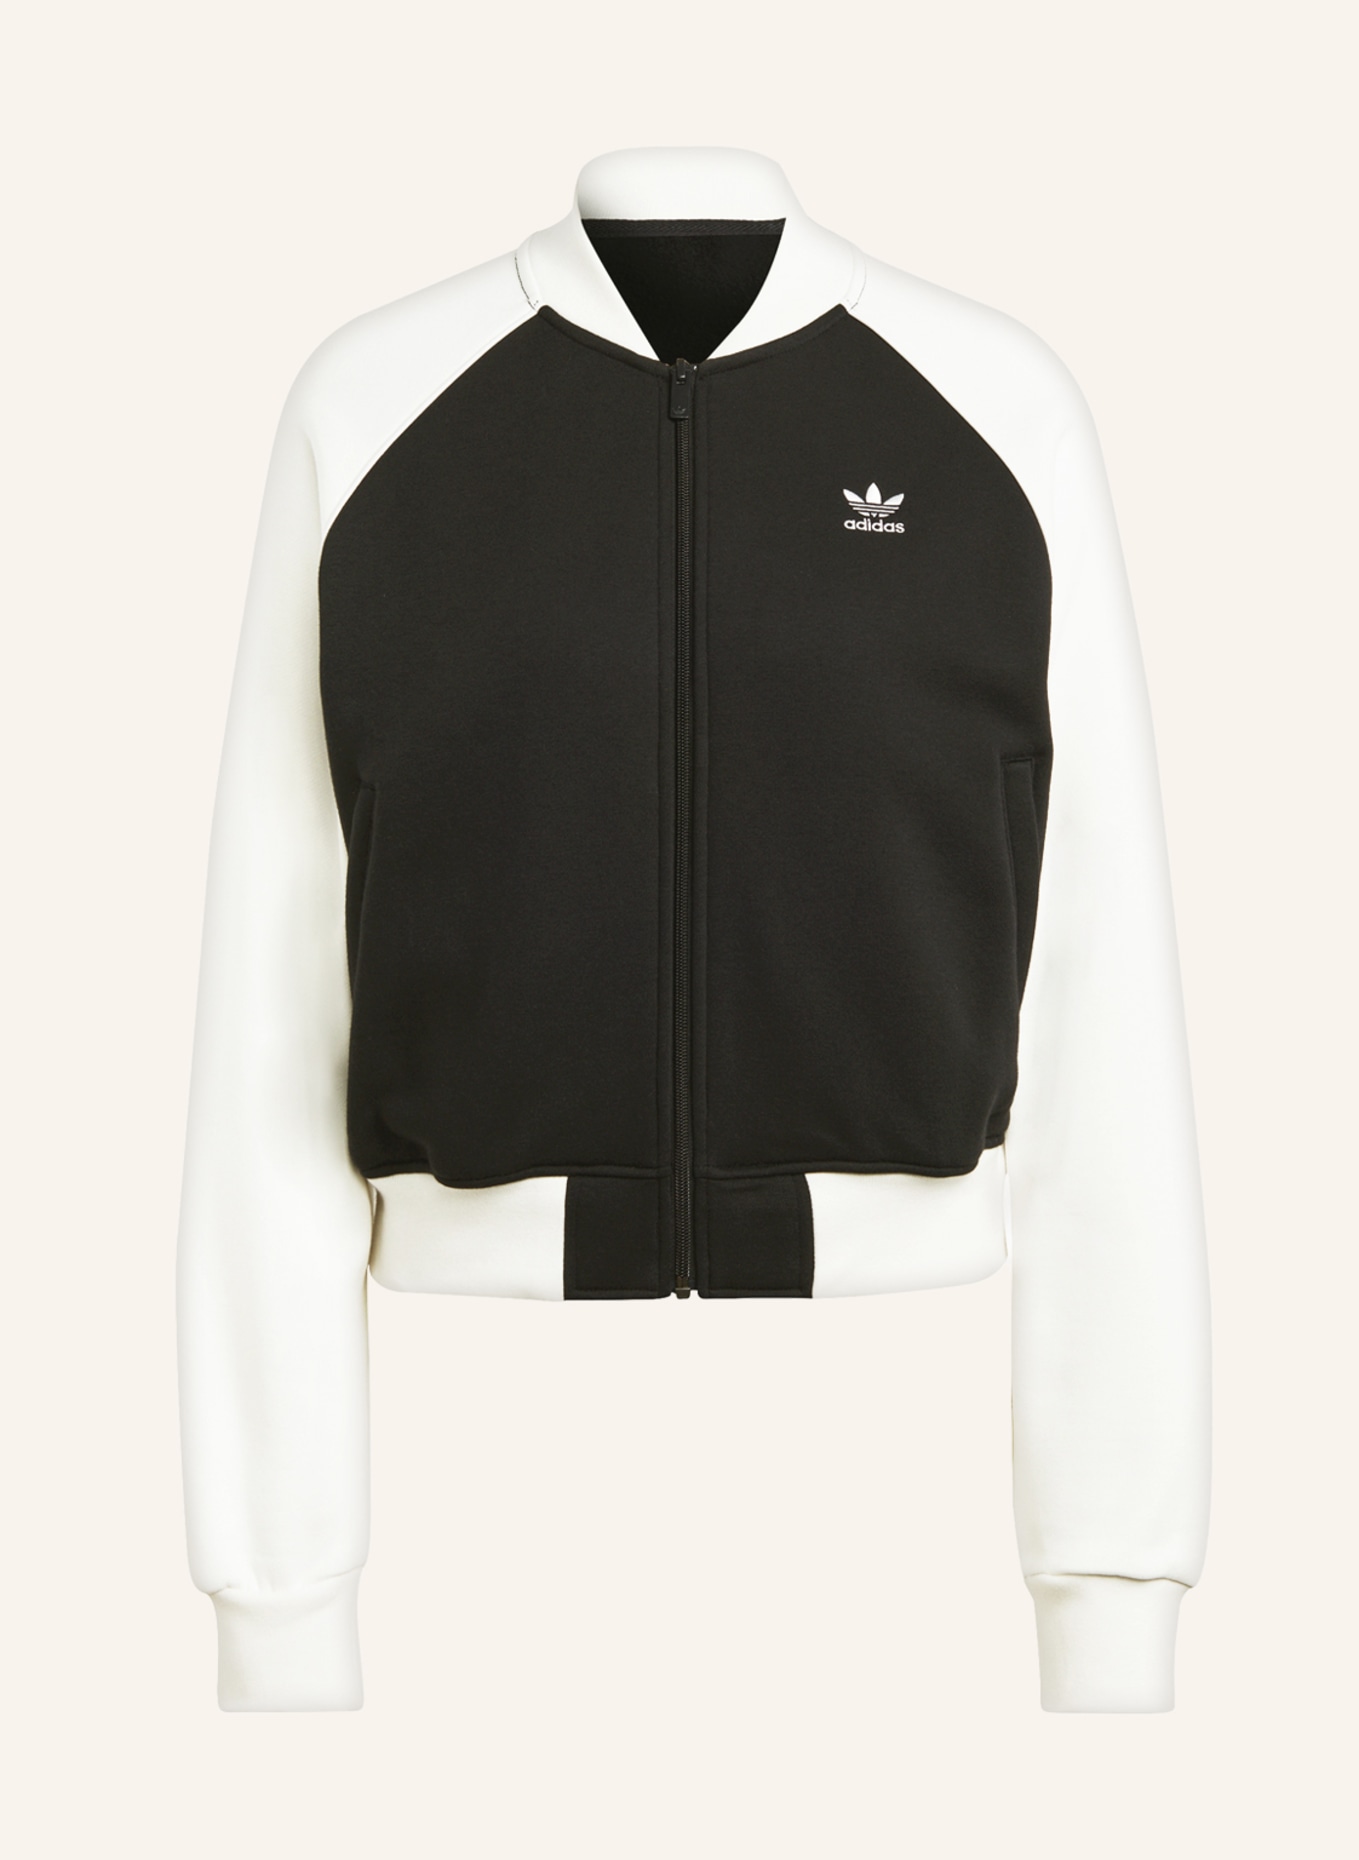 adidas Originals Sweat jacket ADICOLOR ecru in CLASSICS TREFOIL black